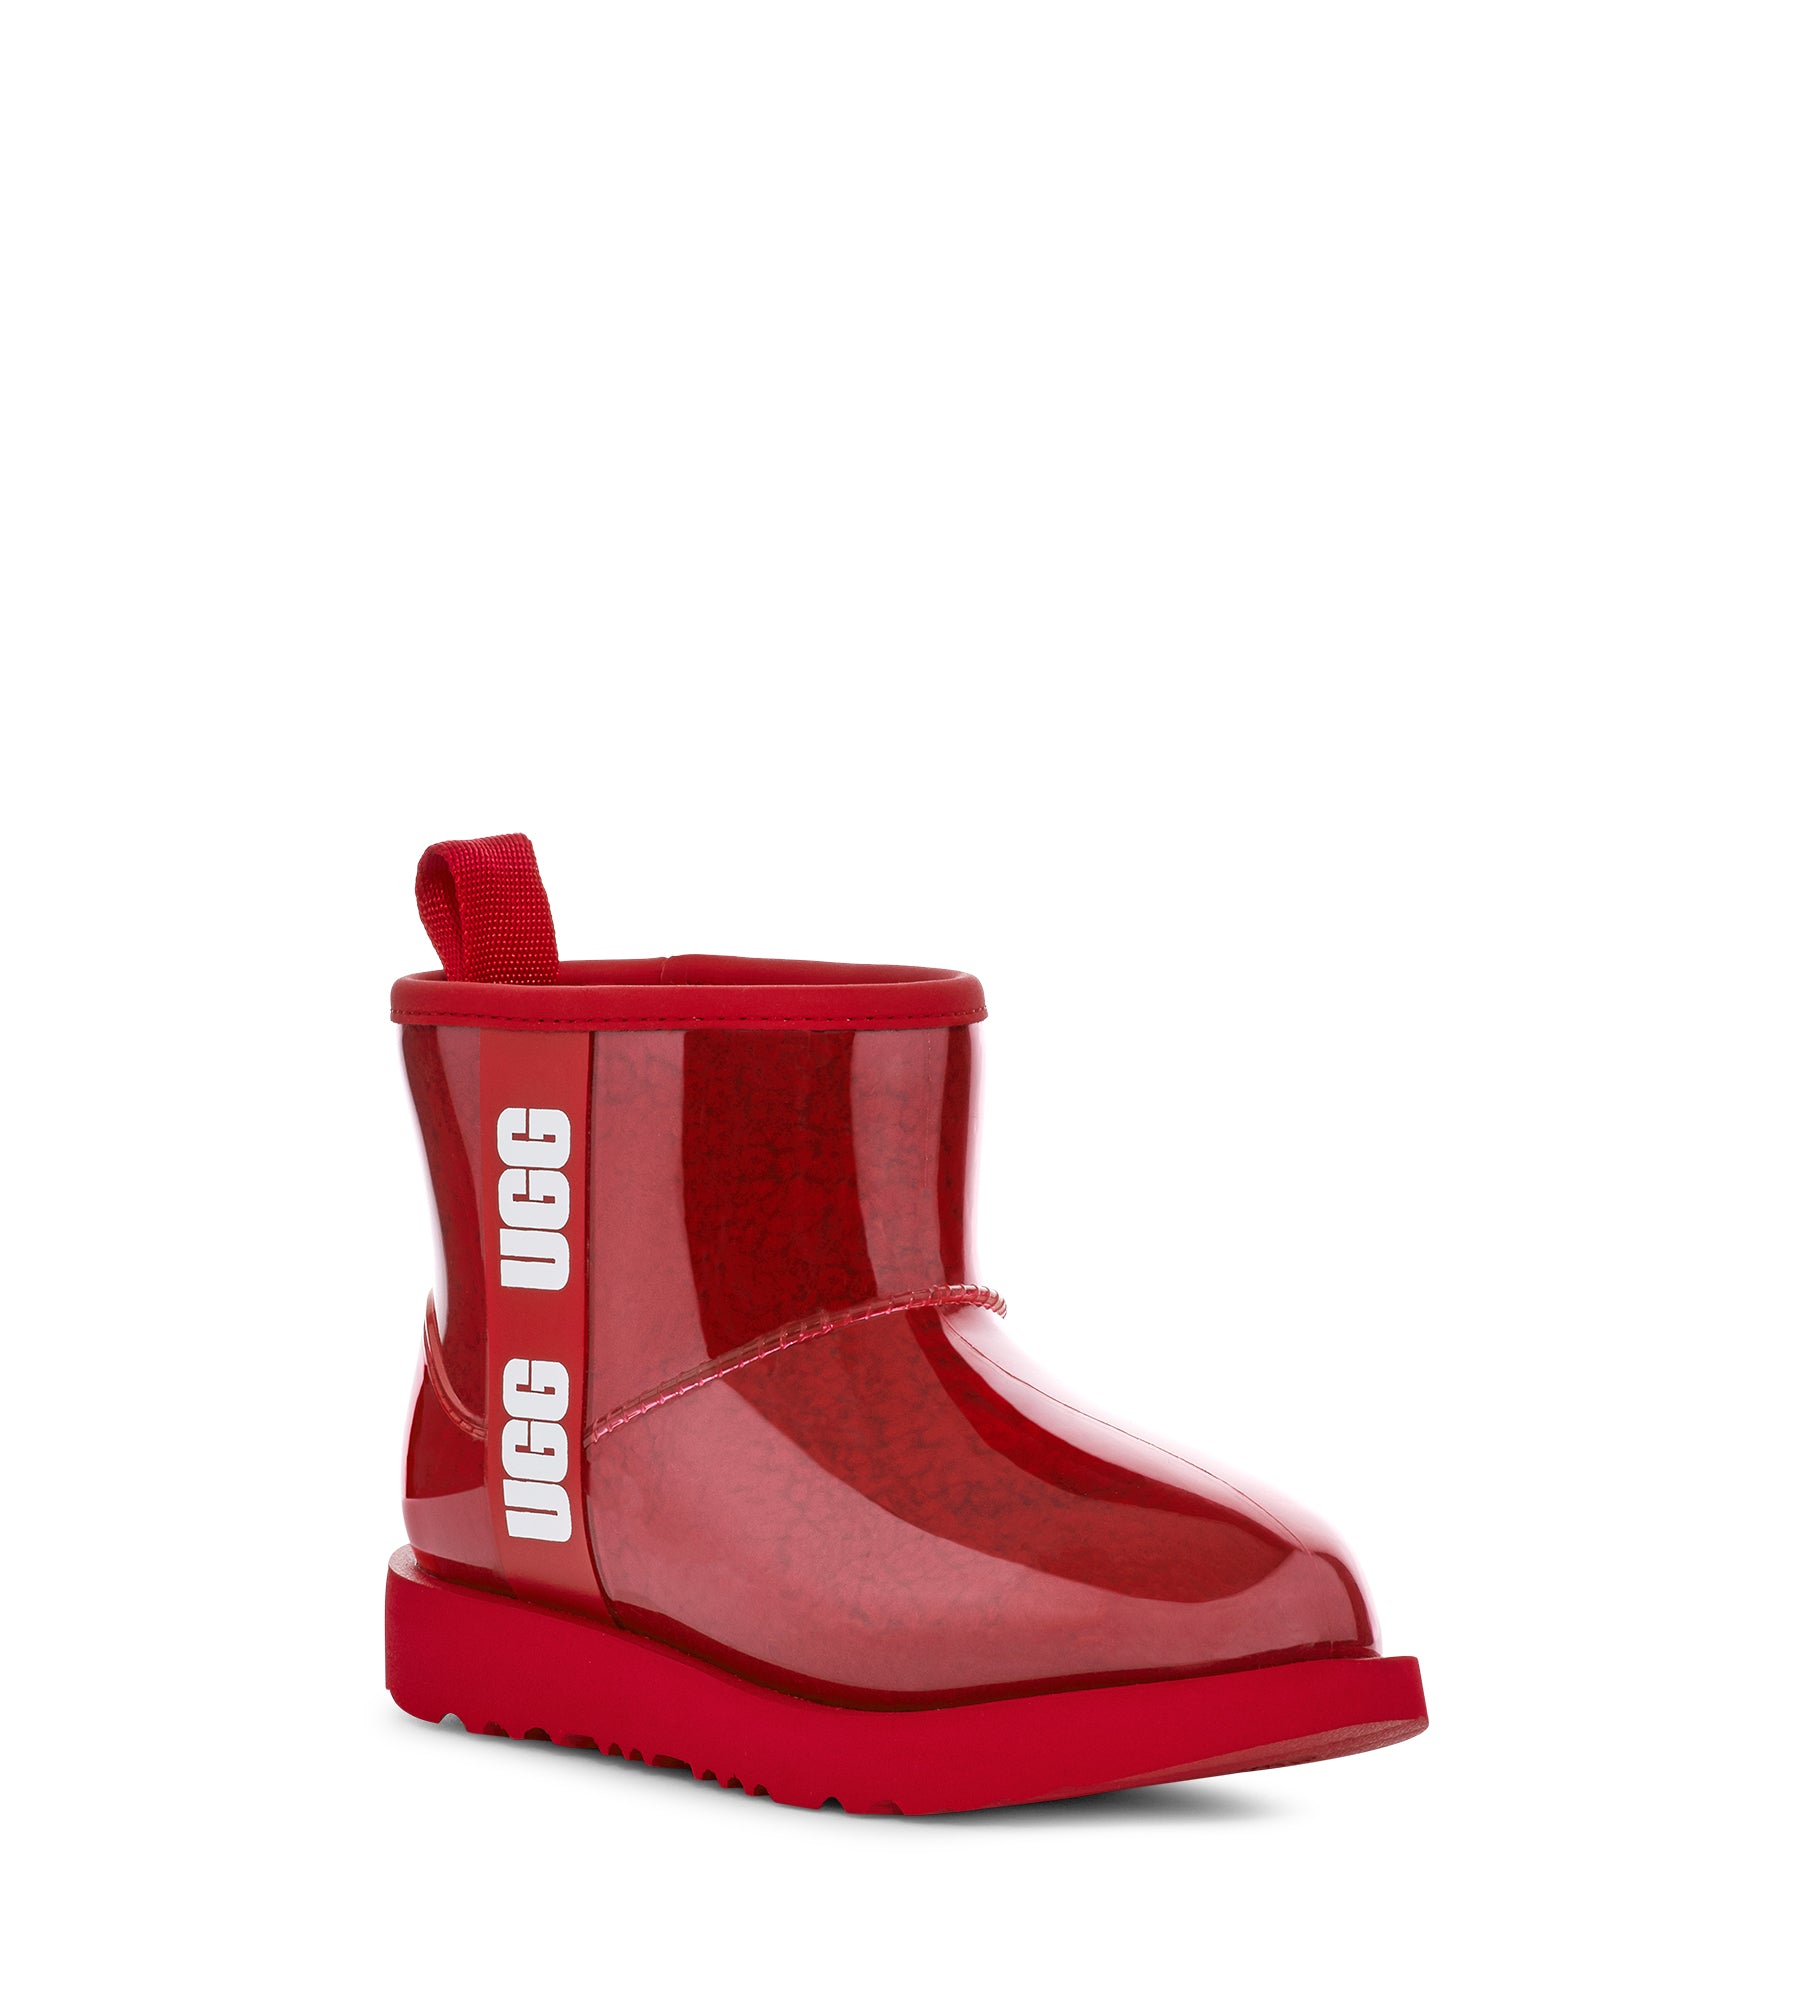 samba red rain boot